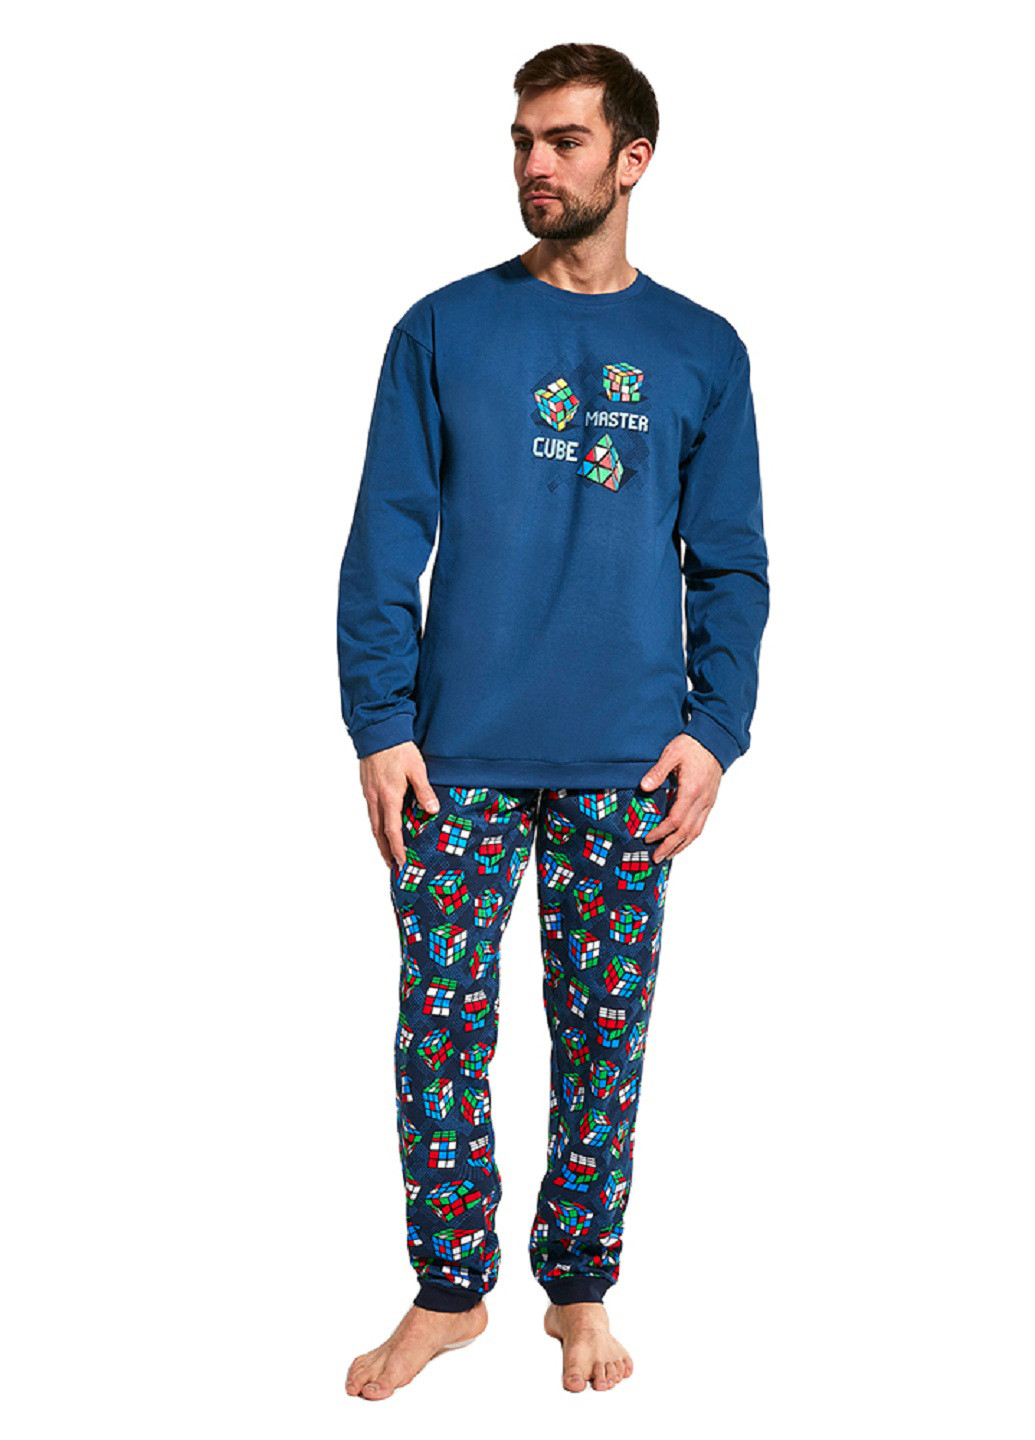 Пижама (свитшот, брюки) Cornette свитшот + брюки рисунок синяя домашняя хлопок, трикотаж